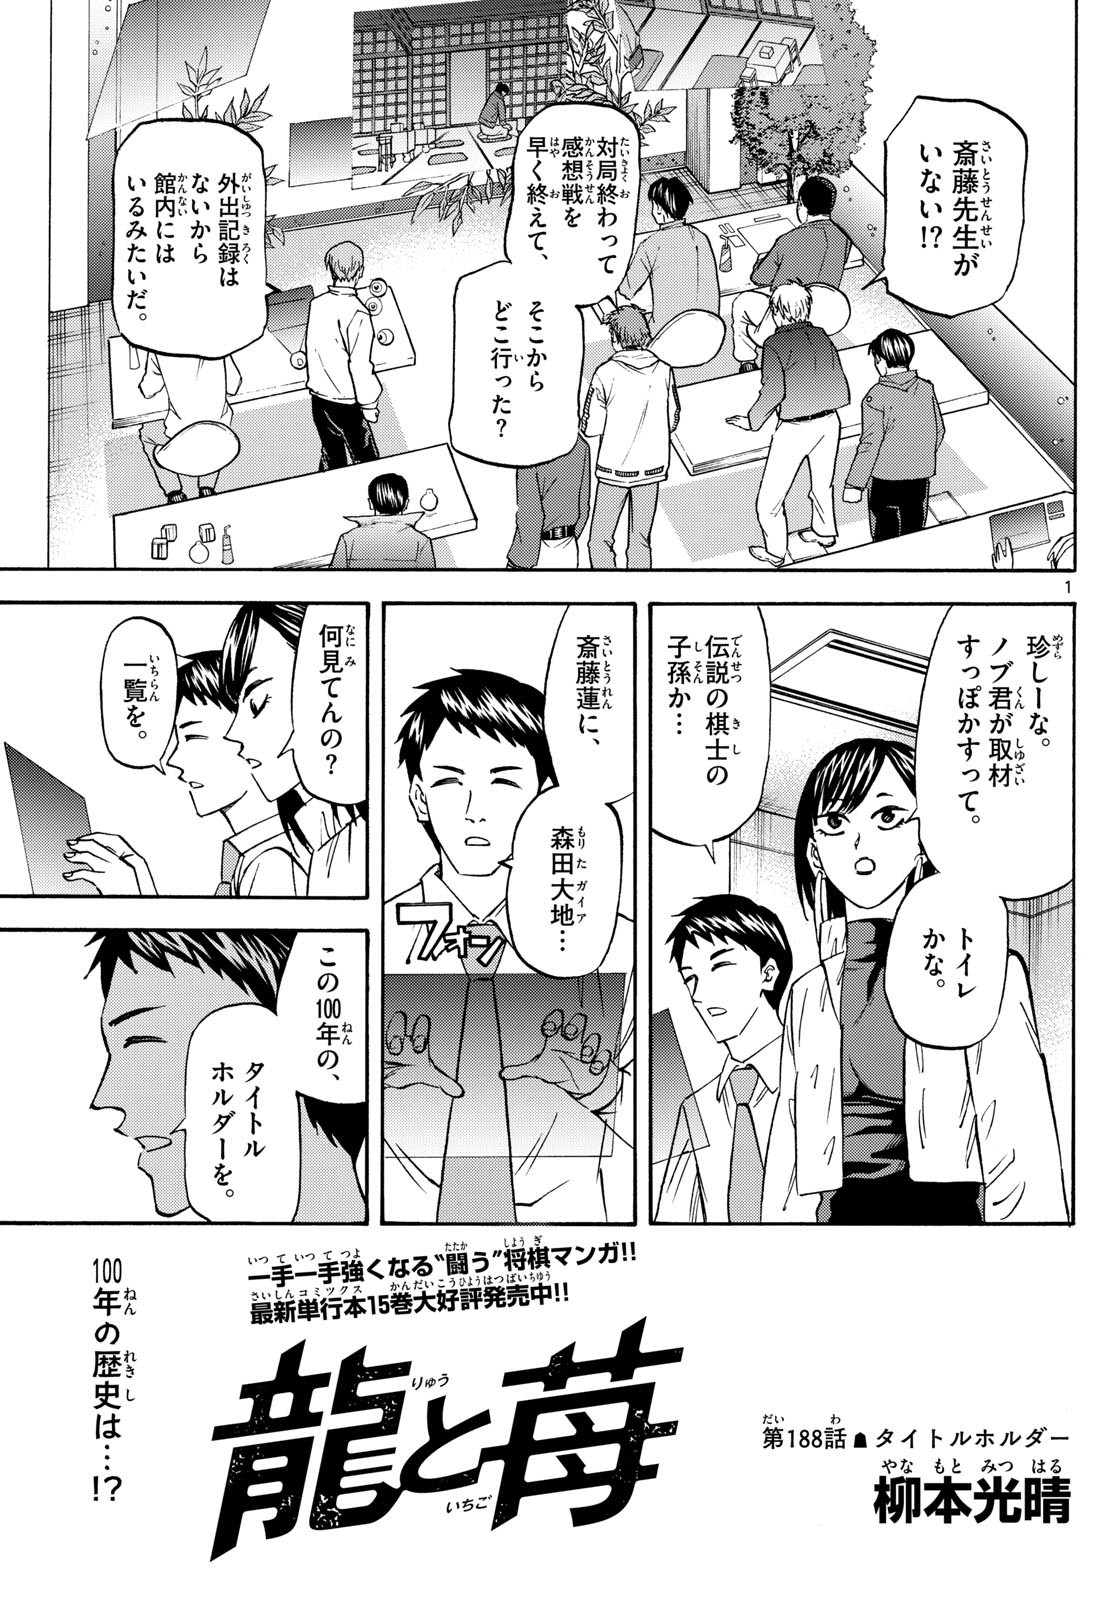 Ryu-to-Ichigo - Chapter 188 - Page 1